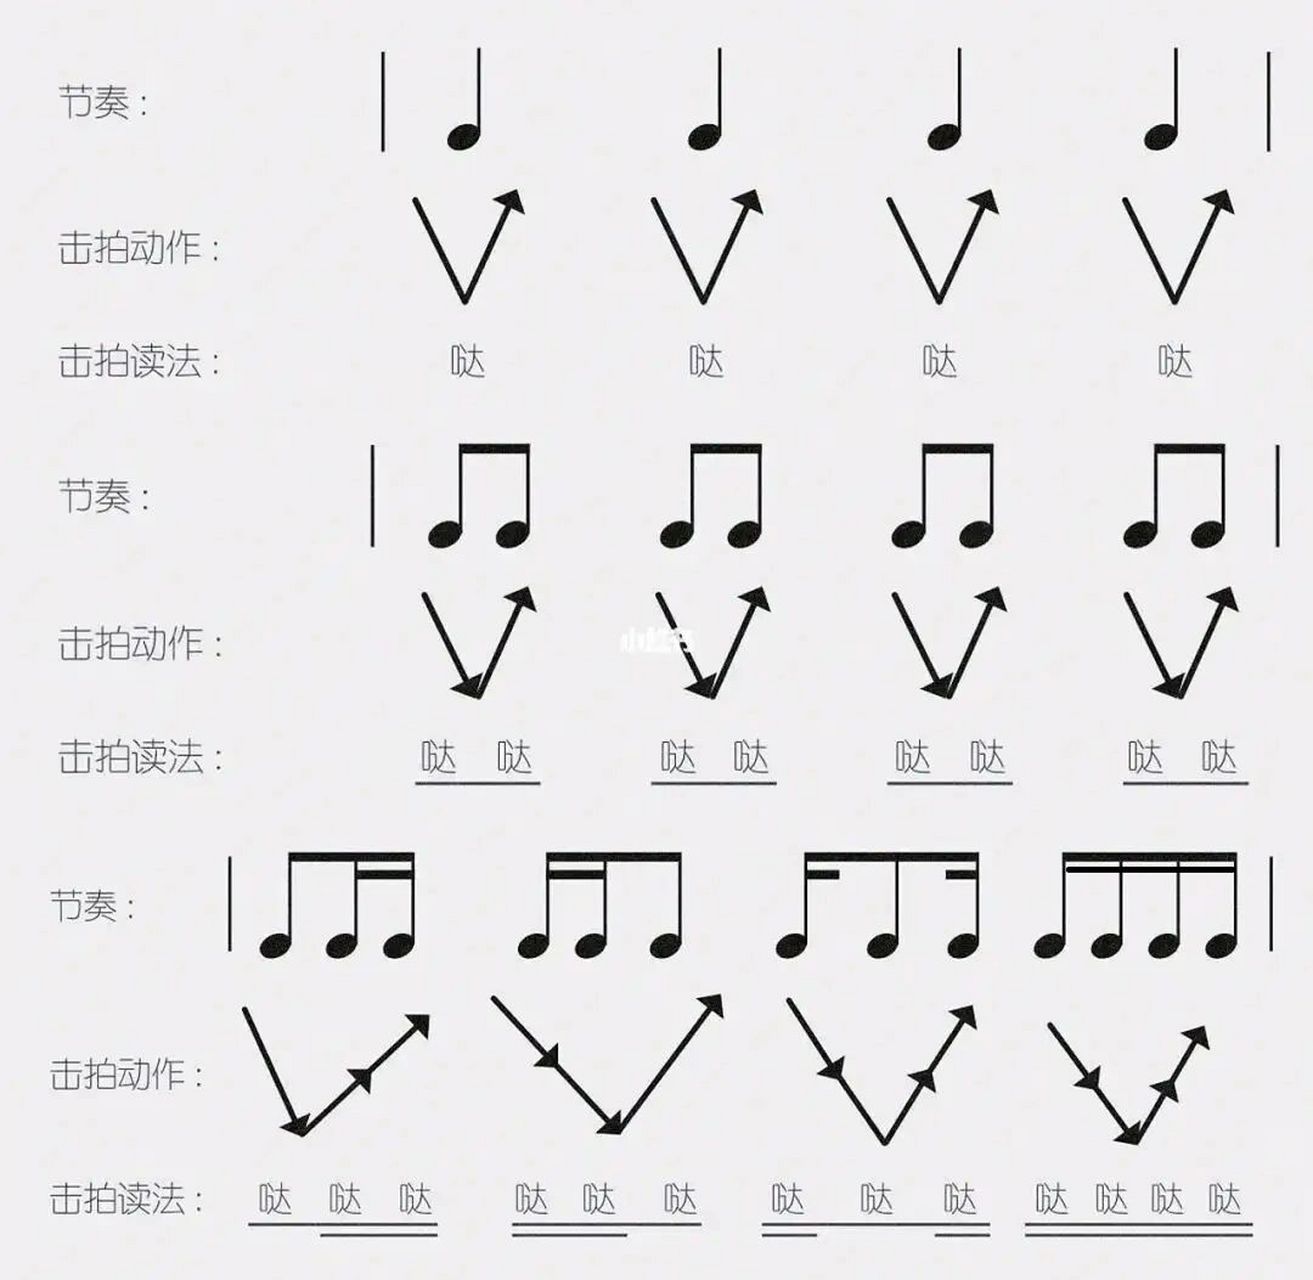 92一张图掌握基本节奏型 一张图掌握最基本并且最常见的节奏型!